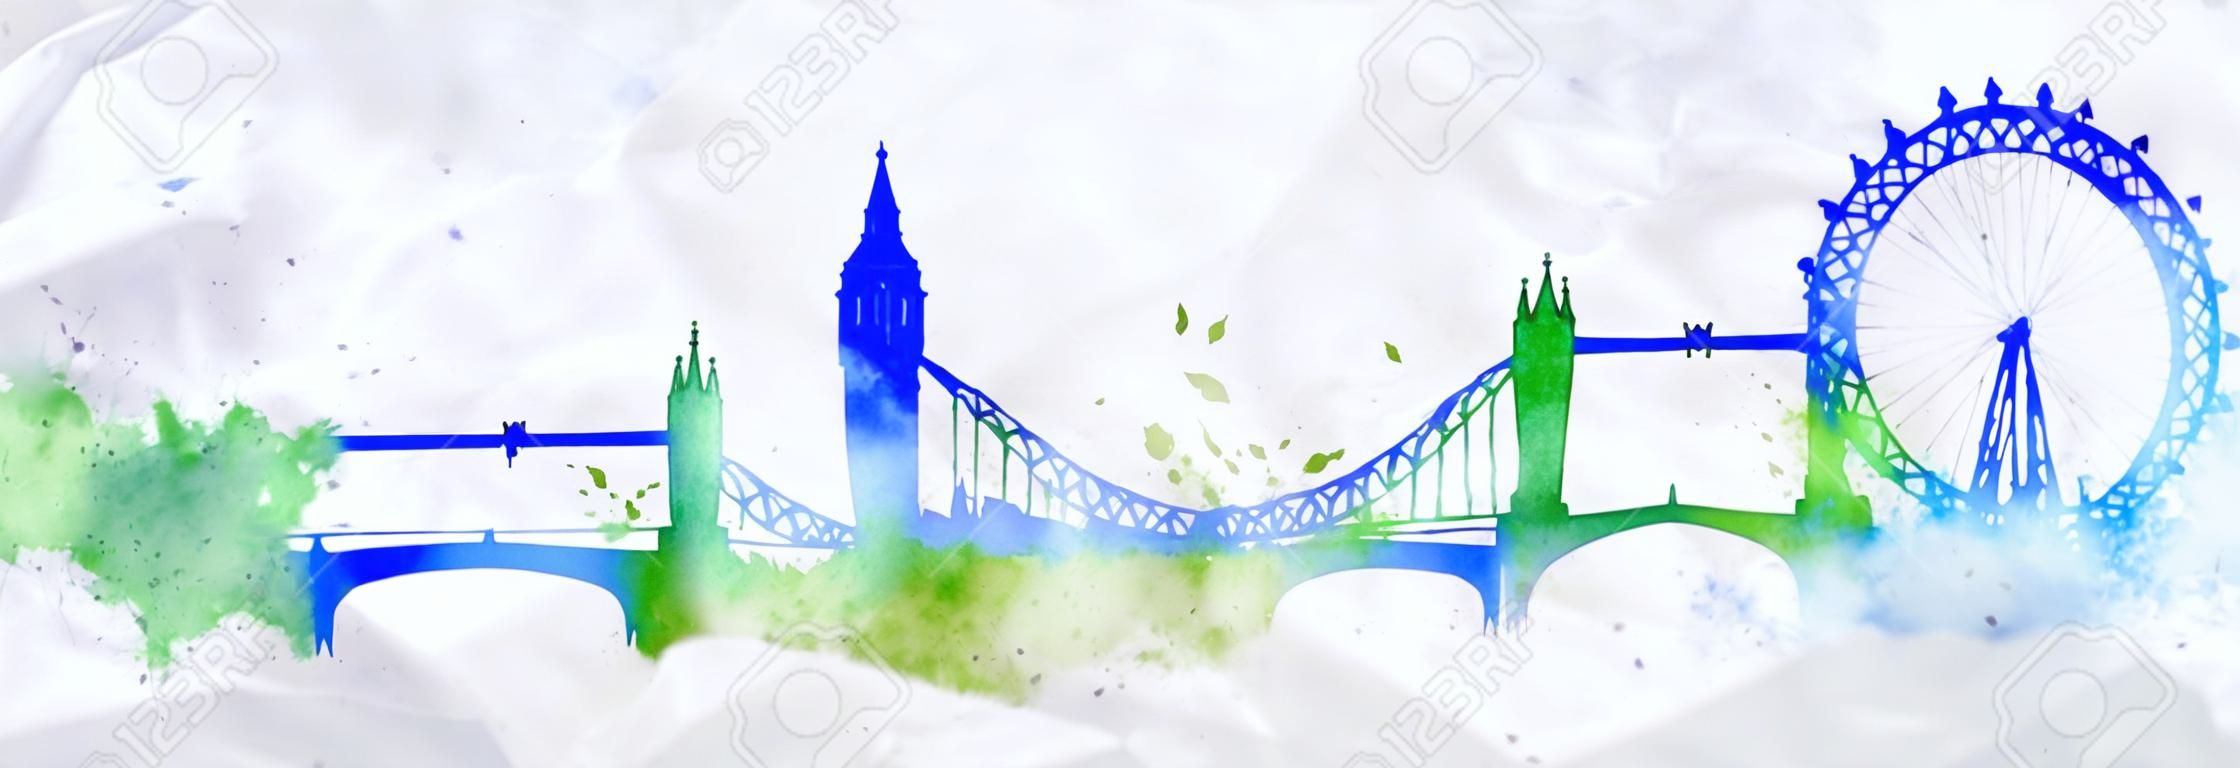 수채화의 밝아진 그린 실루엣 런던 도시 블루 그린 색상으로 줄무늬 랜드 마크 상품